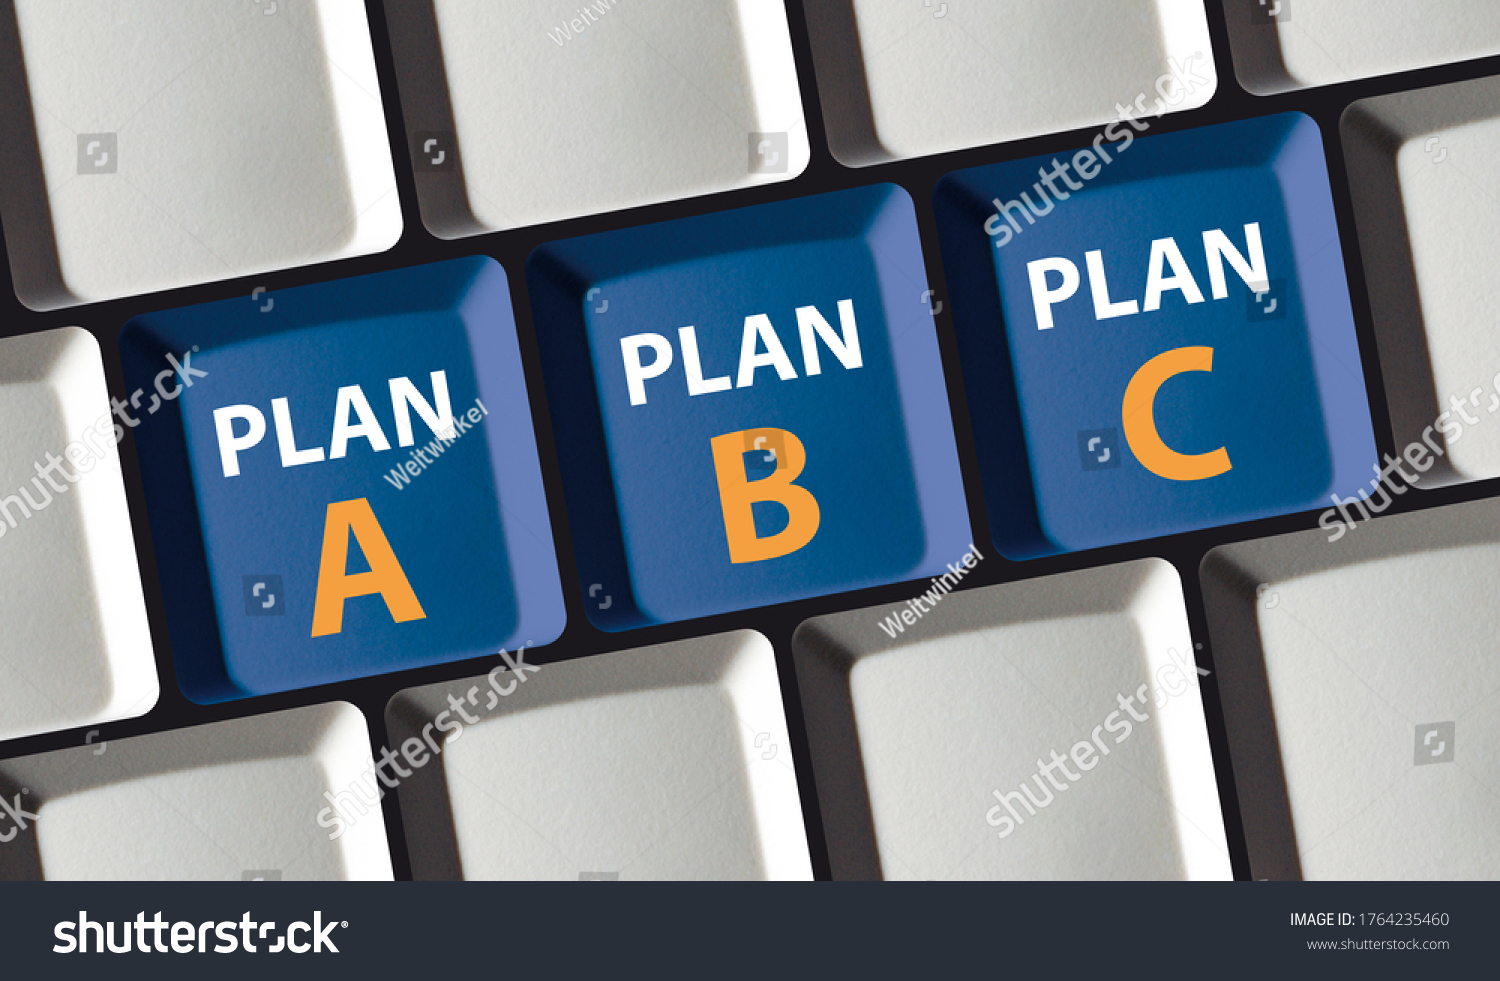 Choose Plan A. Plan B, Plan C Option on computer keyboard #1764235460